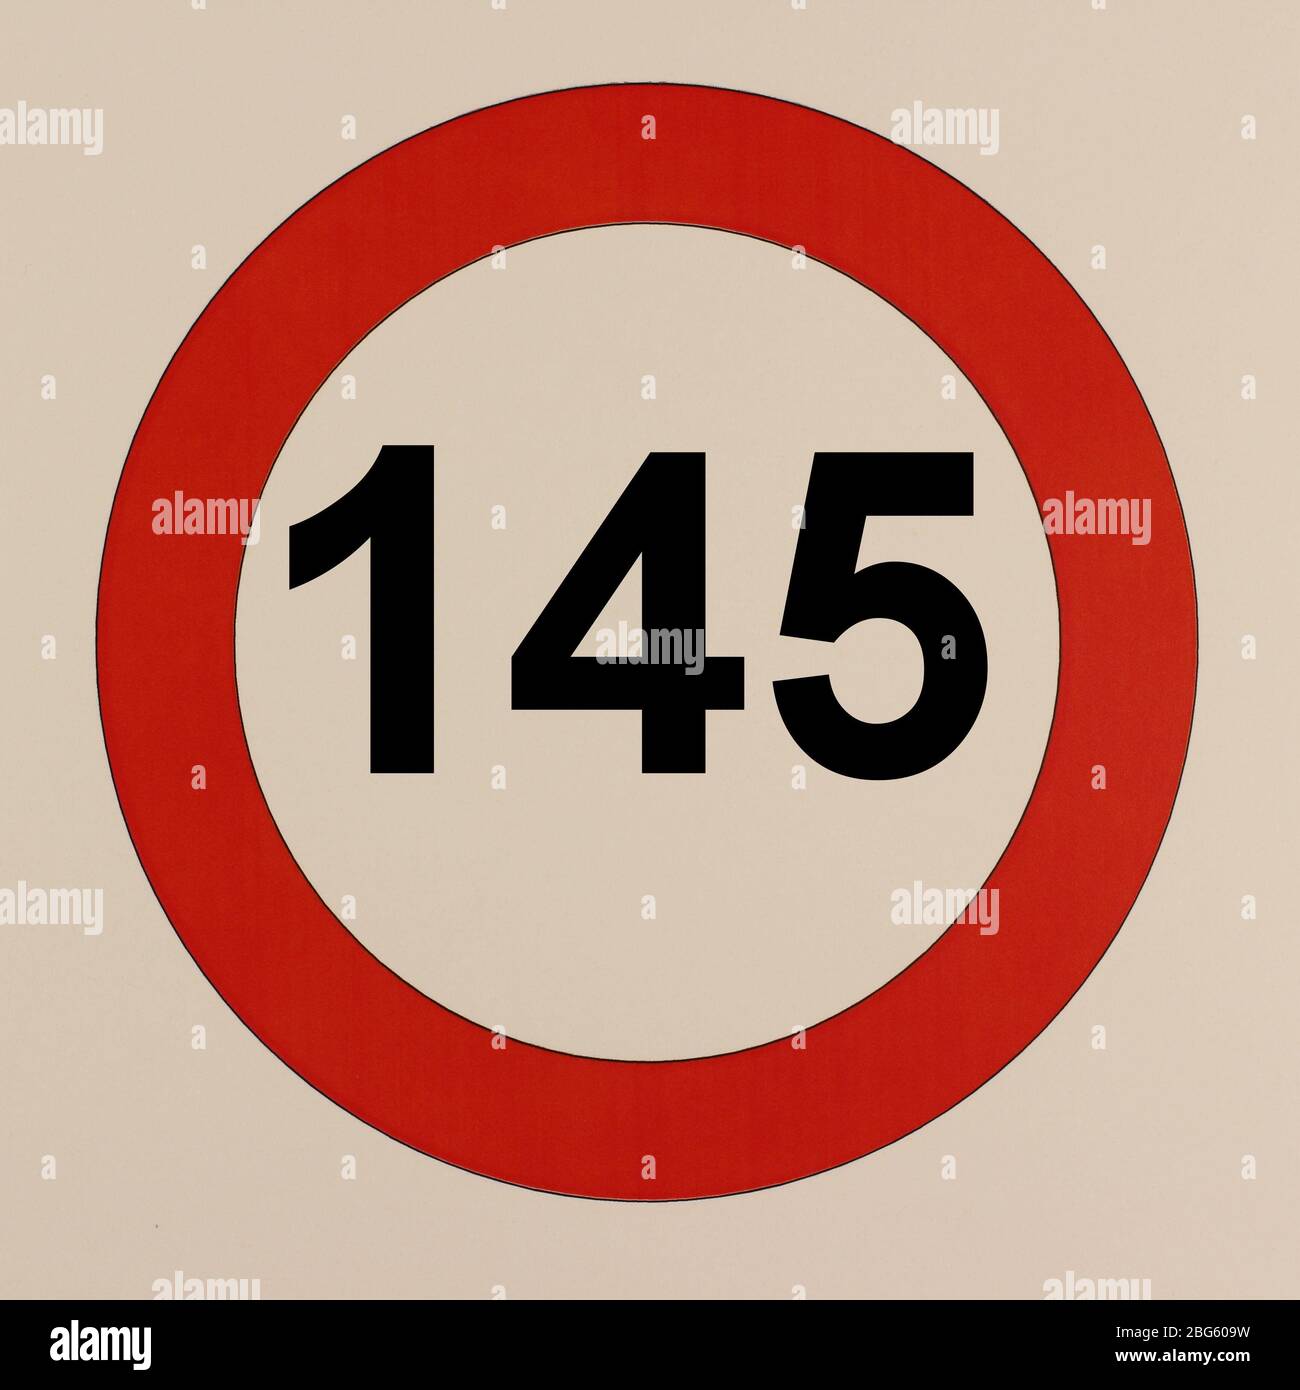 Illustration des Straßenverkehrszeichens 'maximum Geschwindigkeit 145 km pro Stunde' Banque D'Images